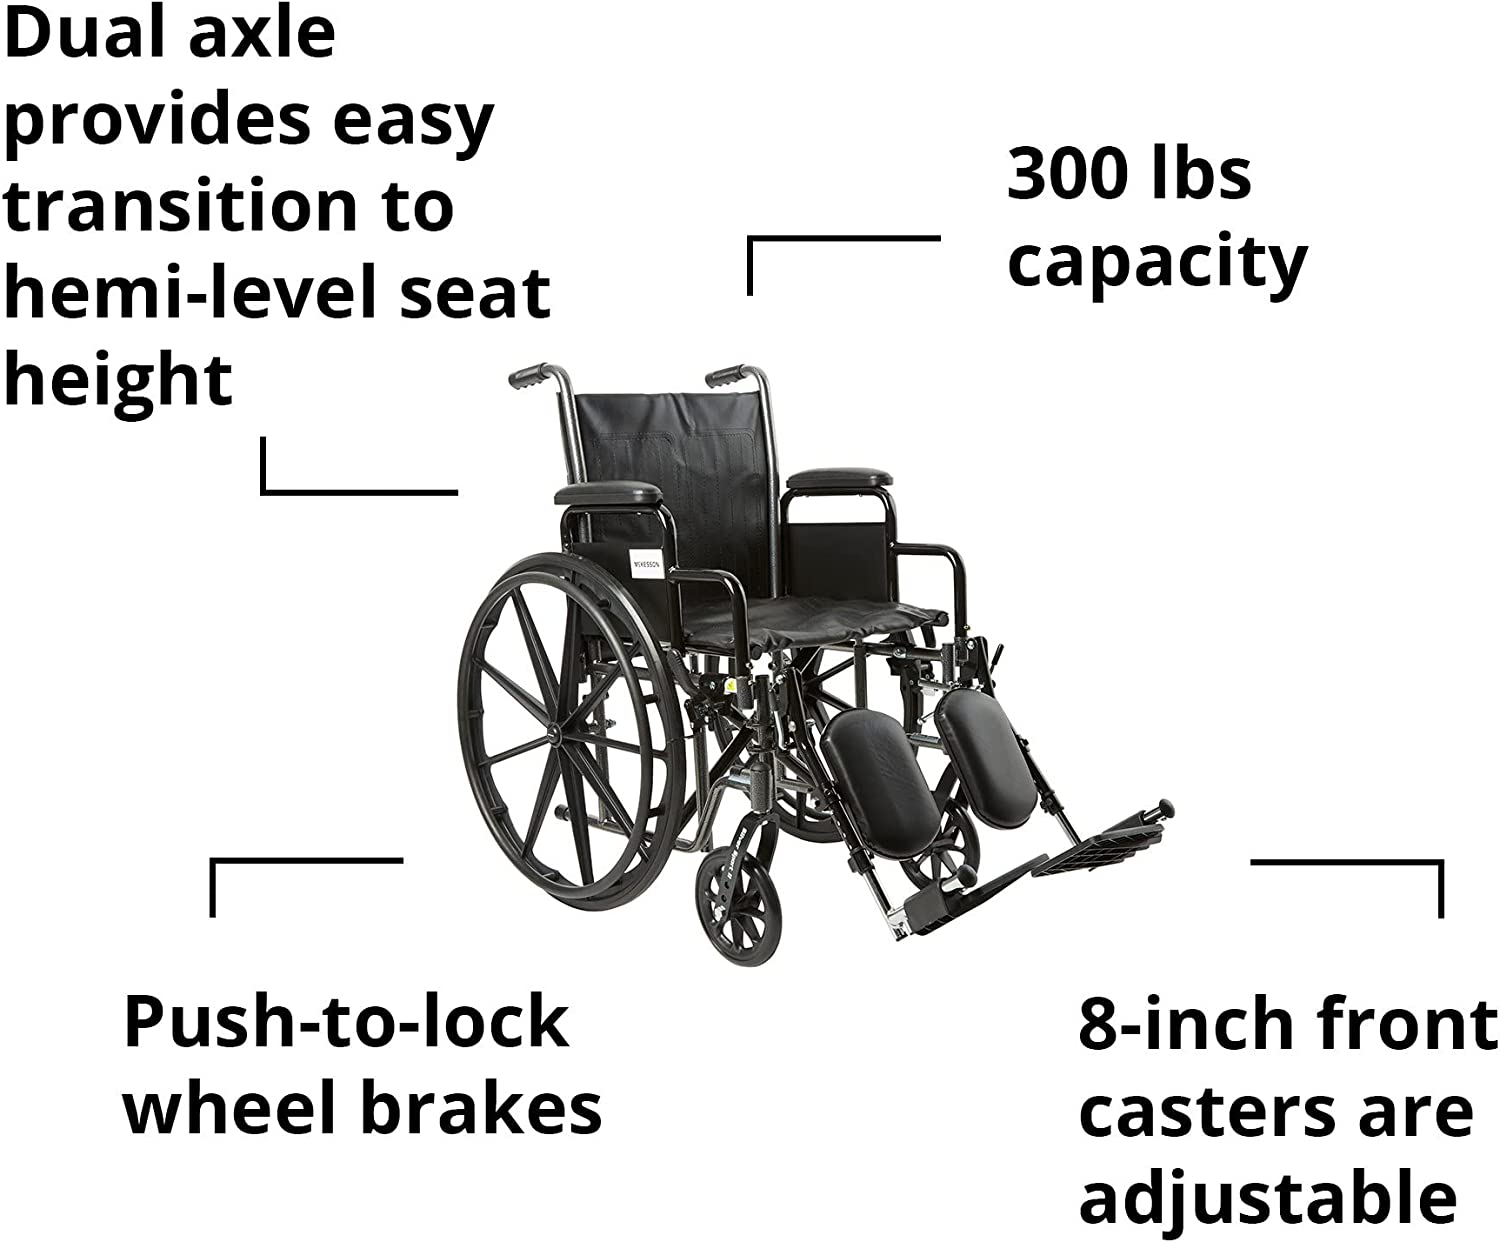 Wheelchairs - McKesson - Wasatch Medical Supply